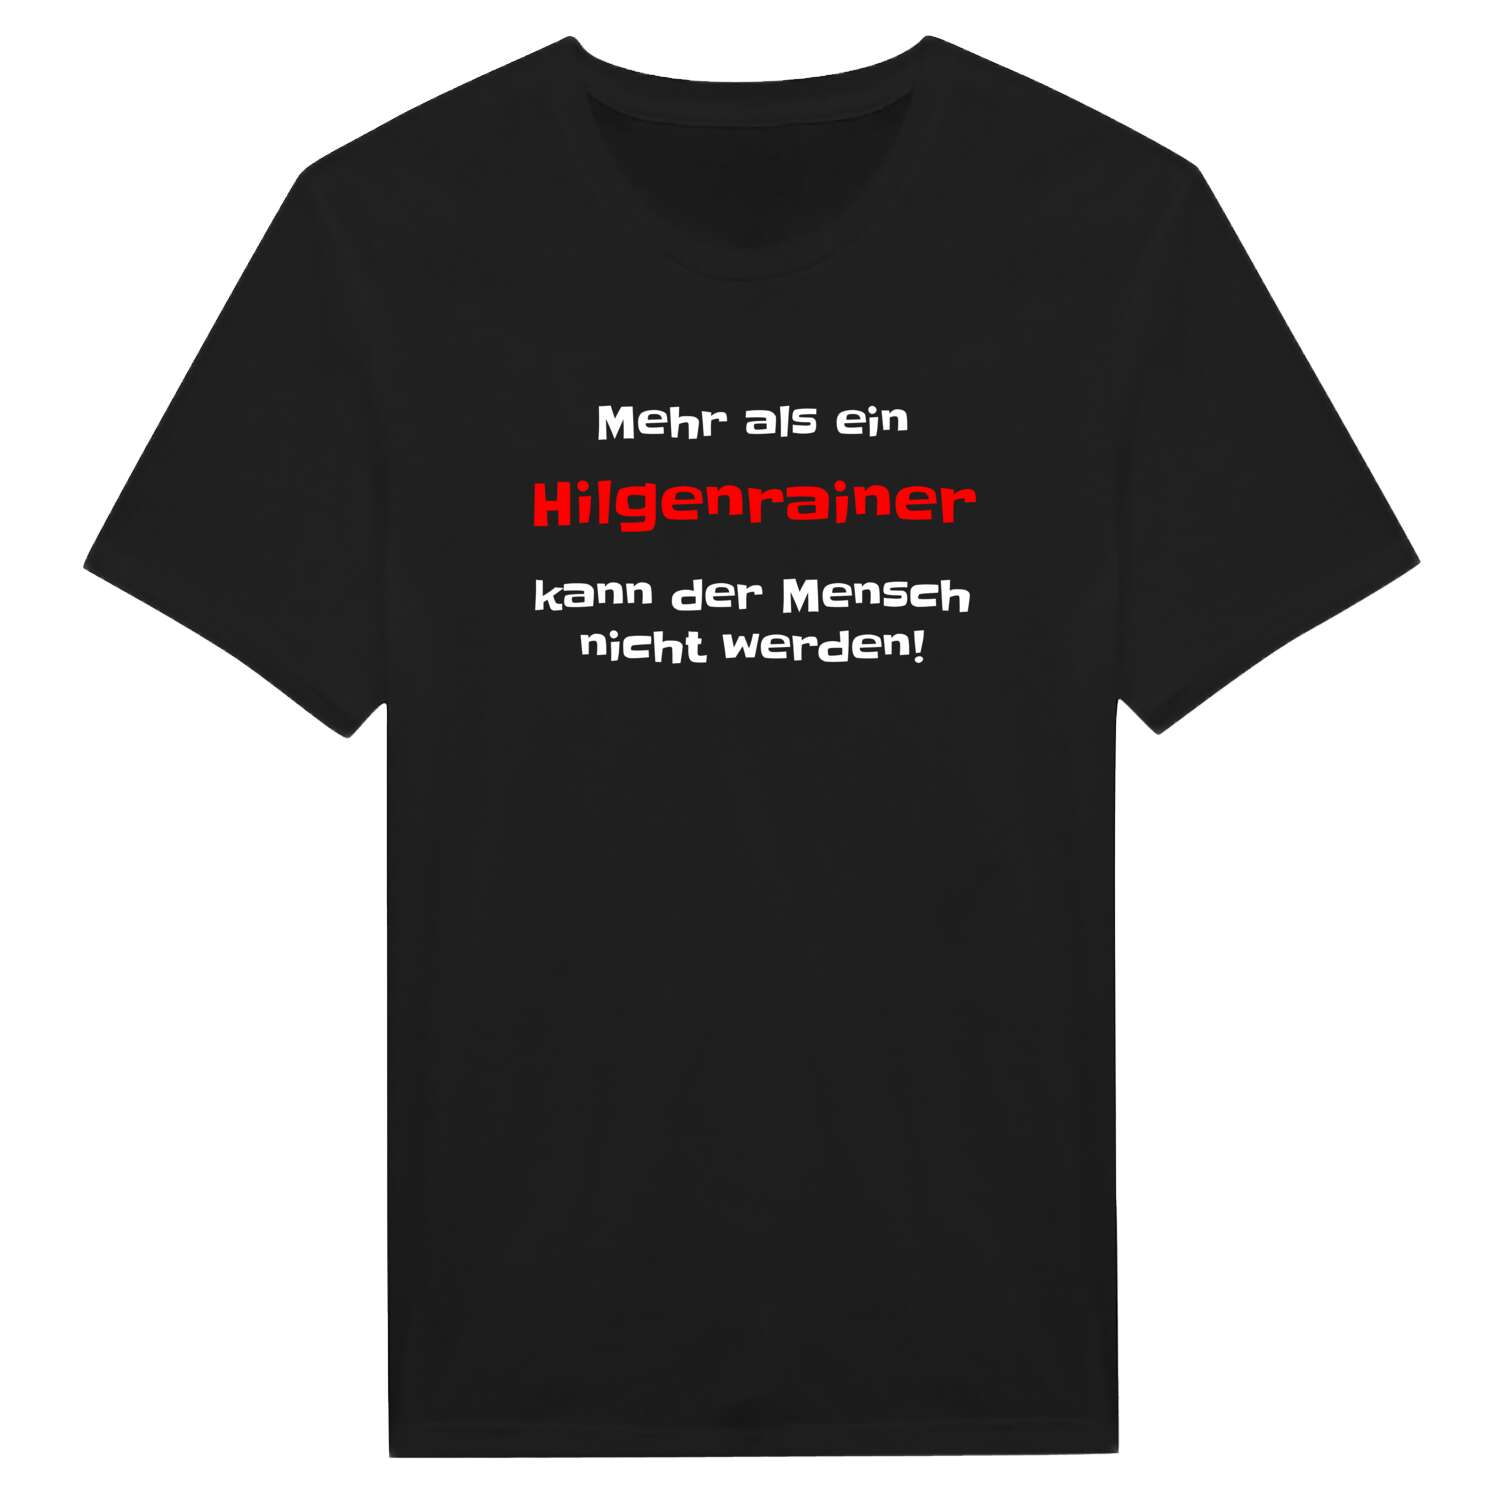 Hilgenrain T-Shirt »Mehr als ein«